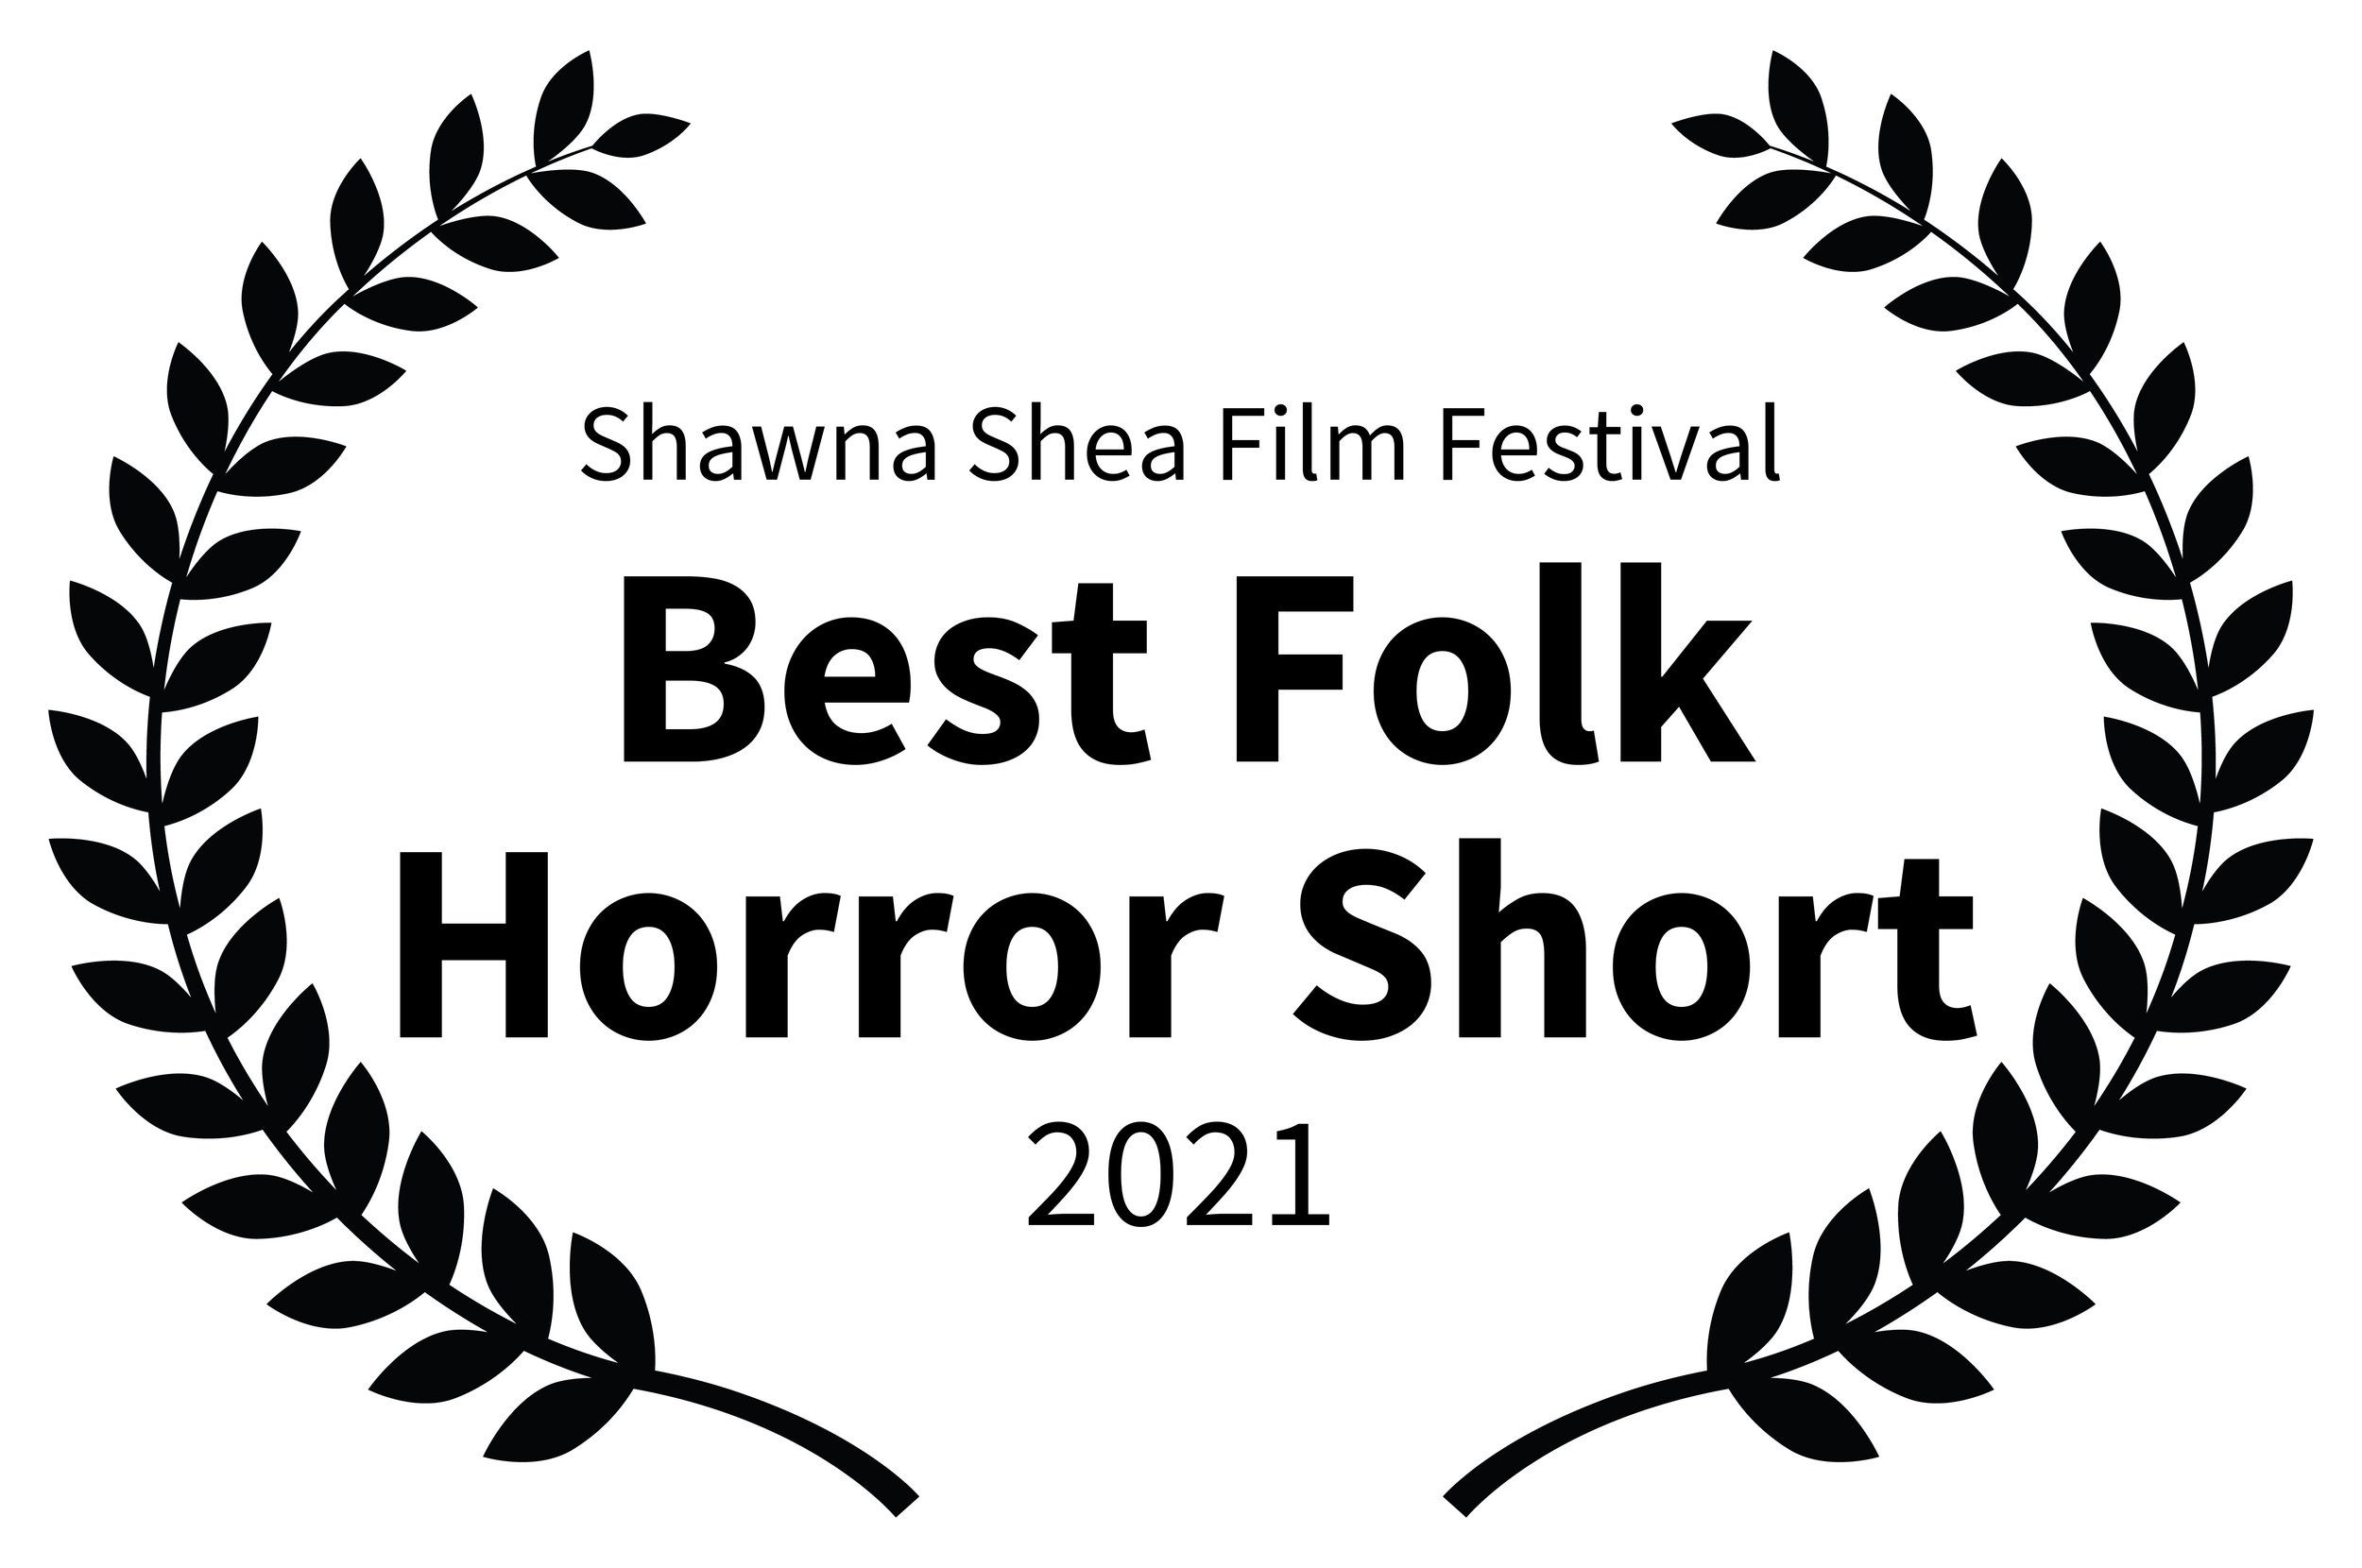 Crows_ShawnaSheaFilmFestival-BestFolkHorrorShort-2021.jpg